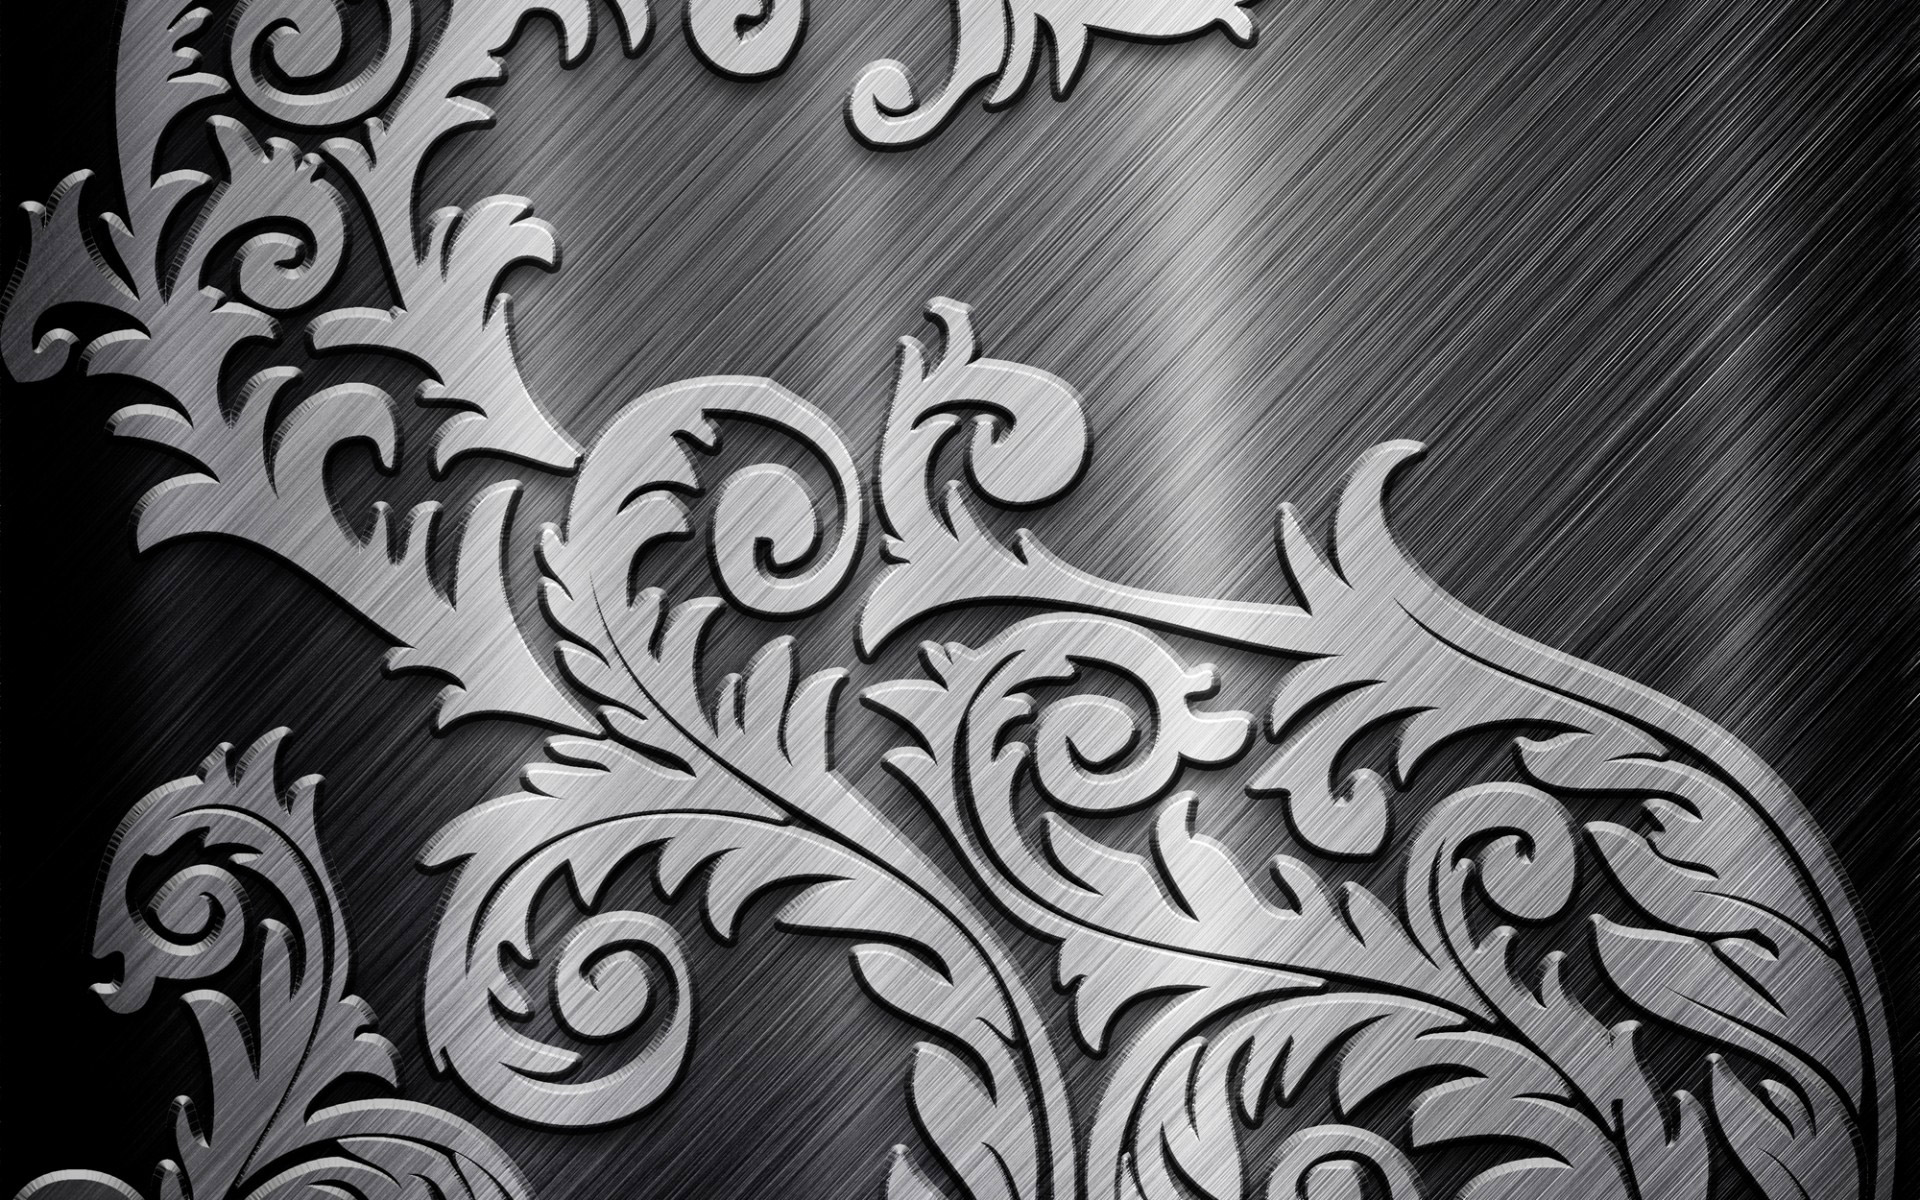 회색 금속 벽지,검정색과 흰색,무늬,디자인,장식,폰트